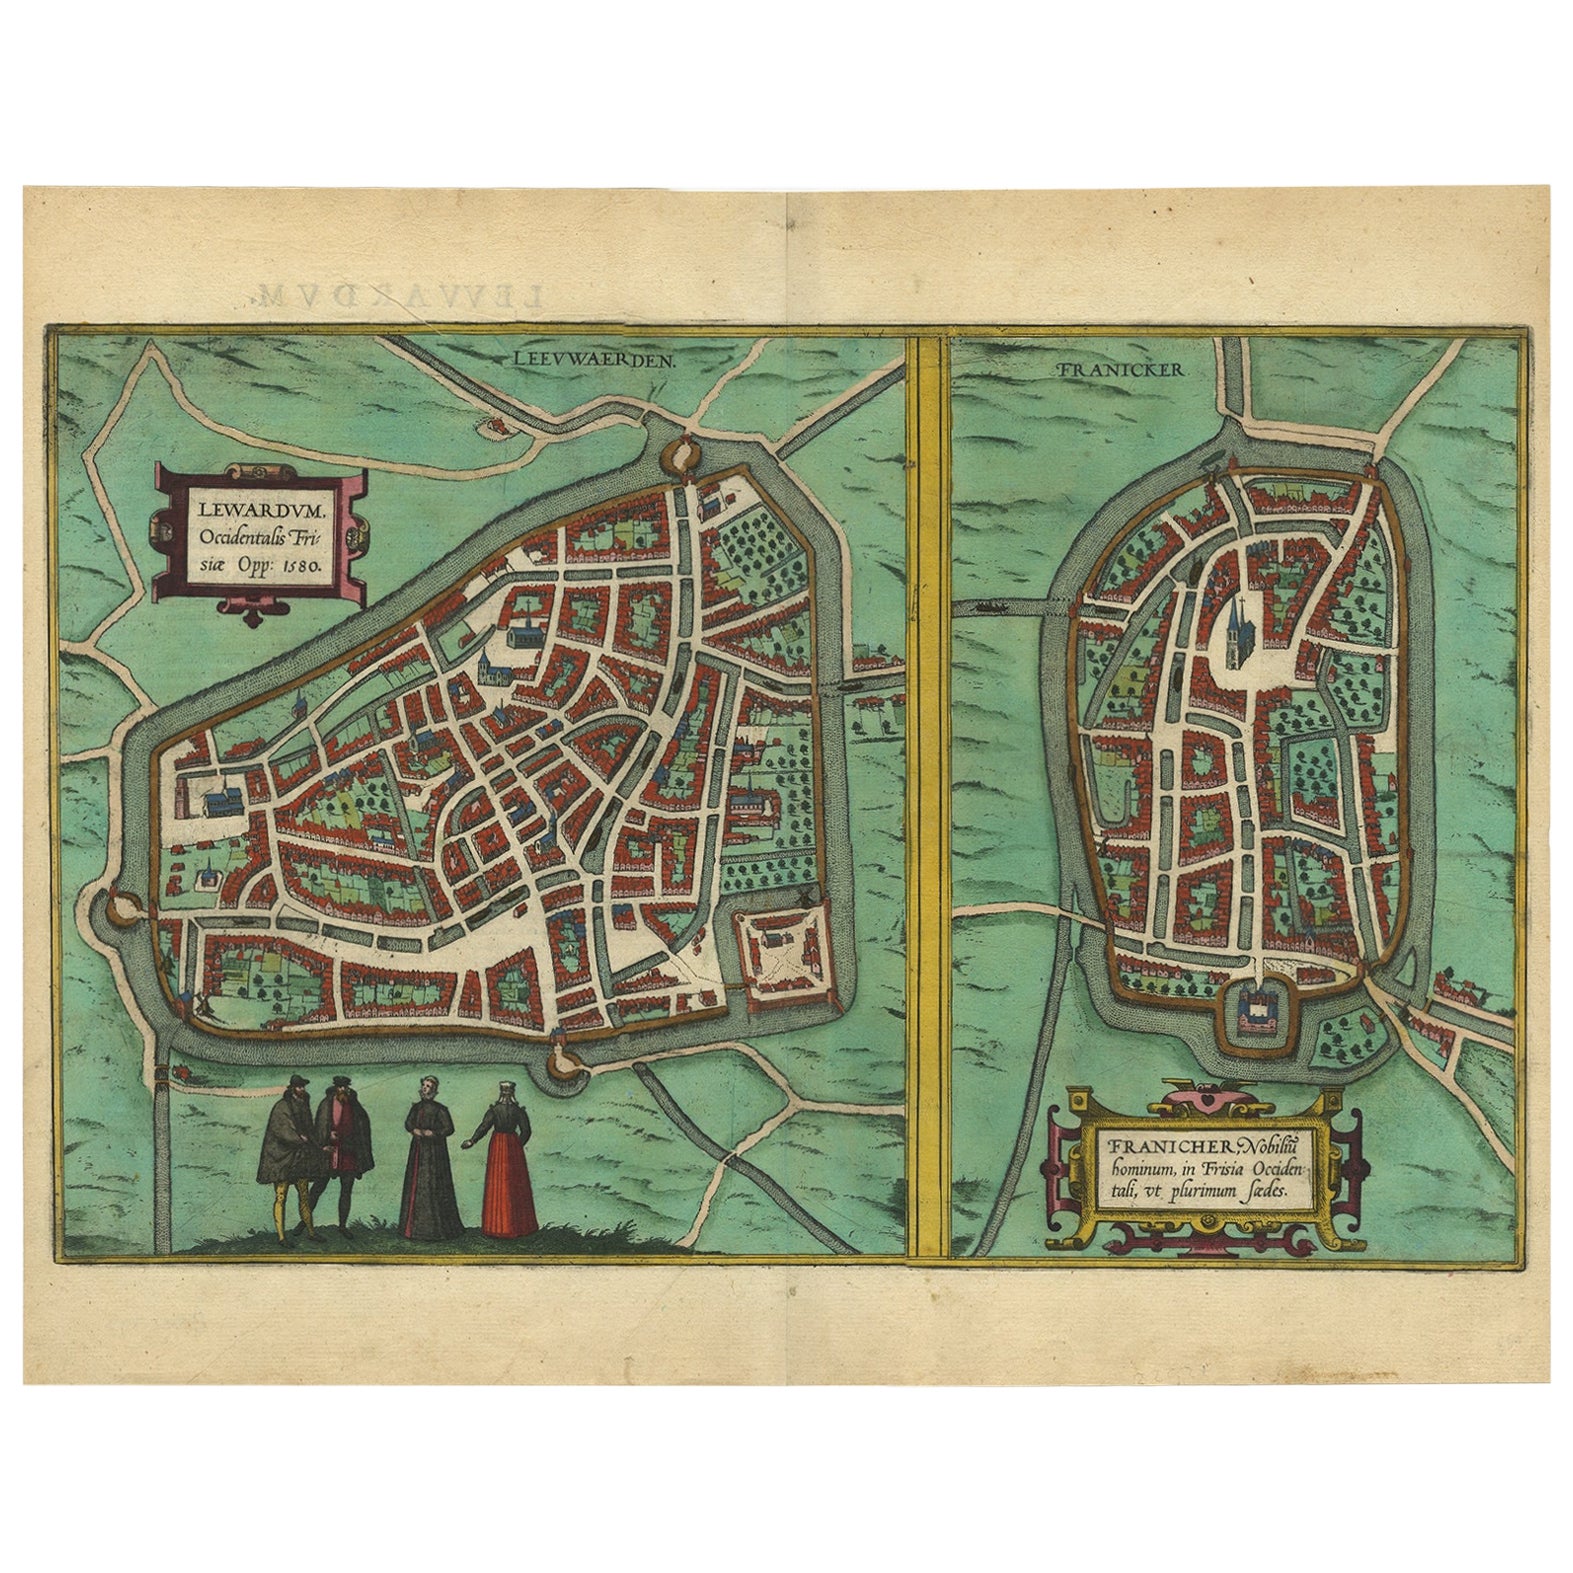 Antike Karte der flämischen Städte Leeuwarden und Franeker in Friesland, 1580